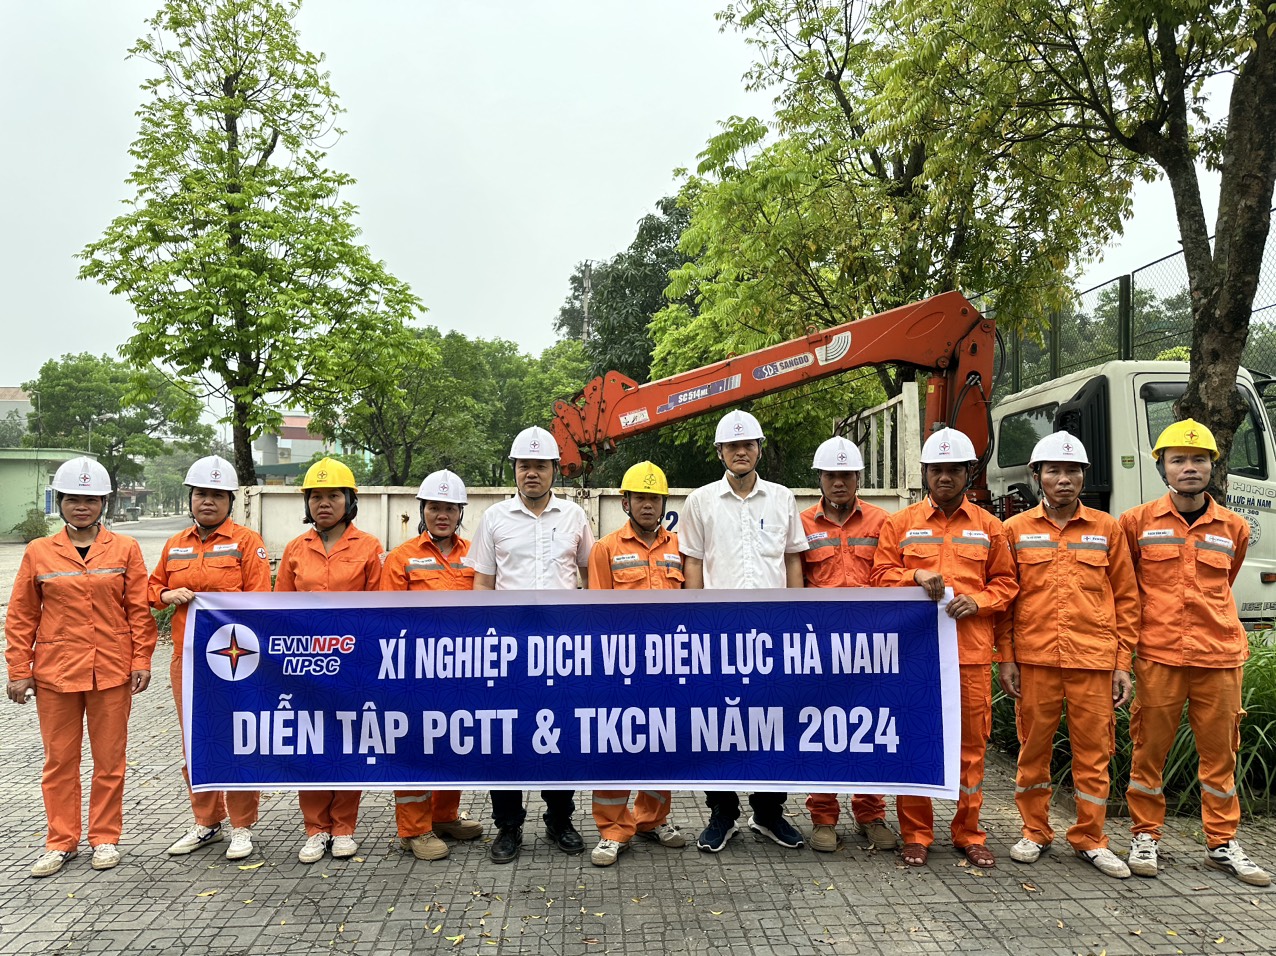  Xí nghiệp Dịch vụ Điện lực Hà Nam diễn tập PCTT & TKCN năm 2024 